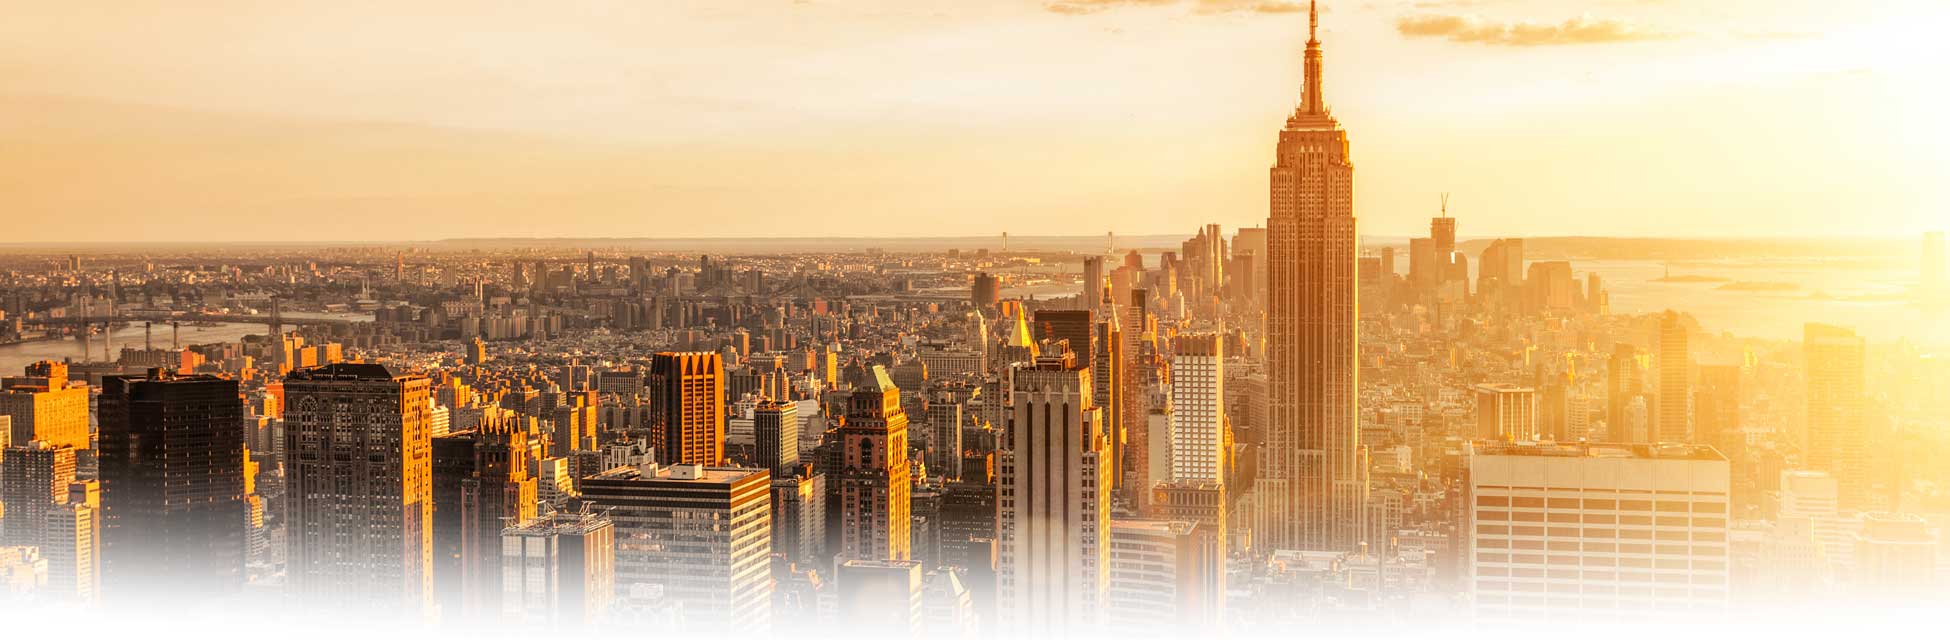 new-york-manhattan-skyline.jpg